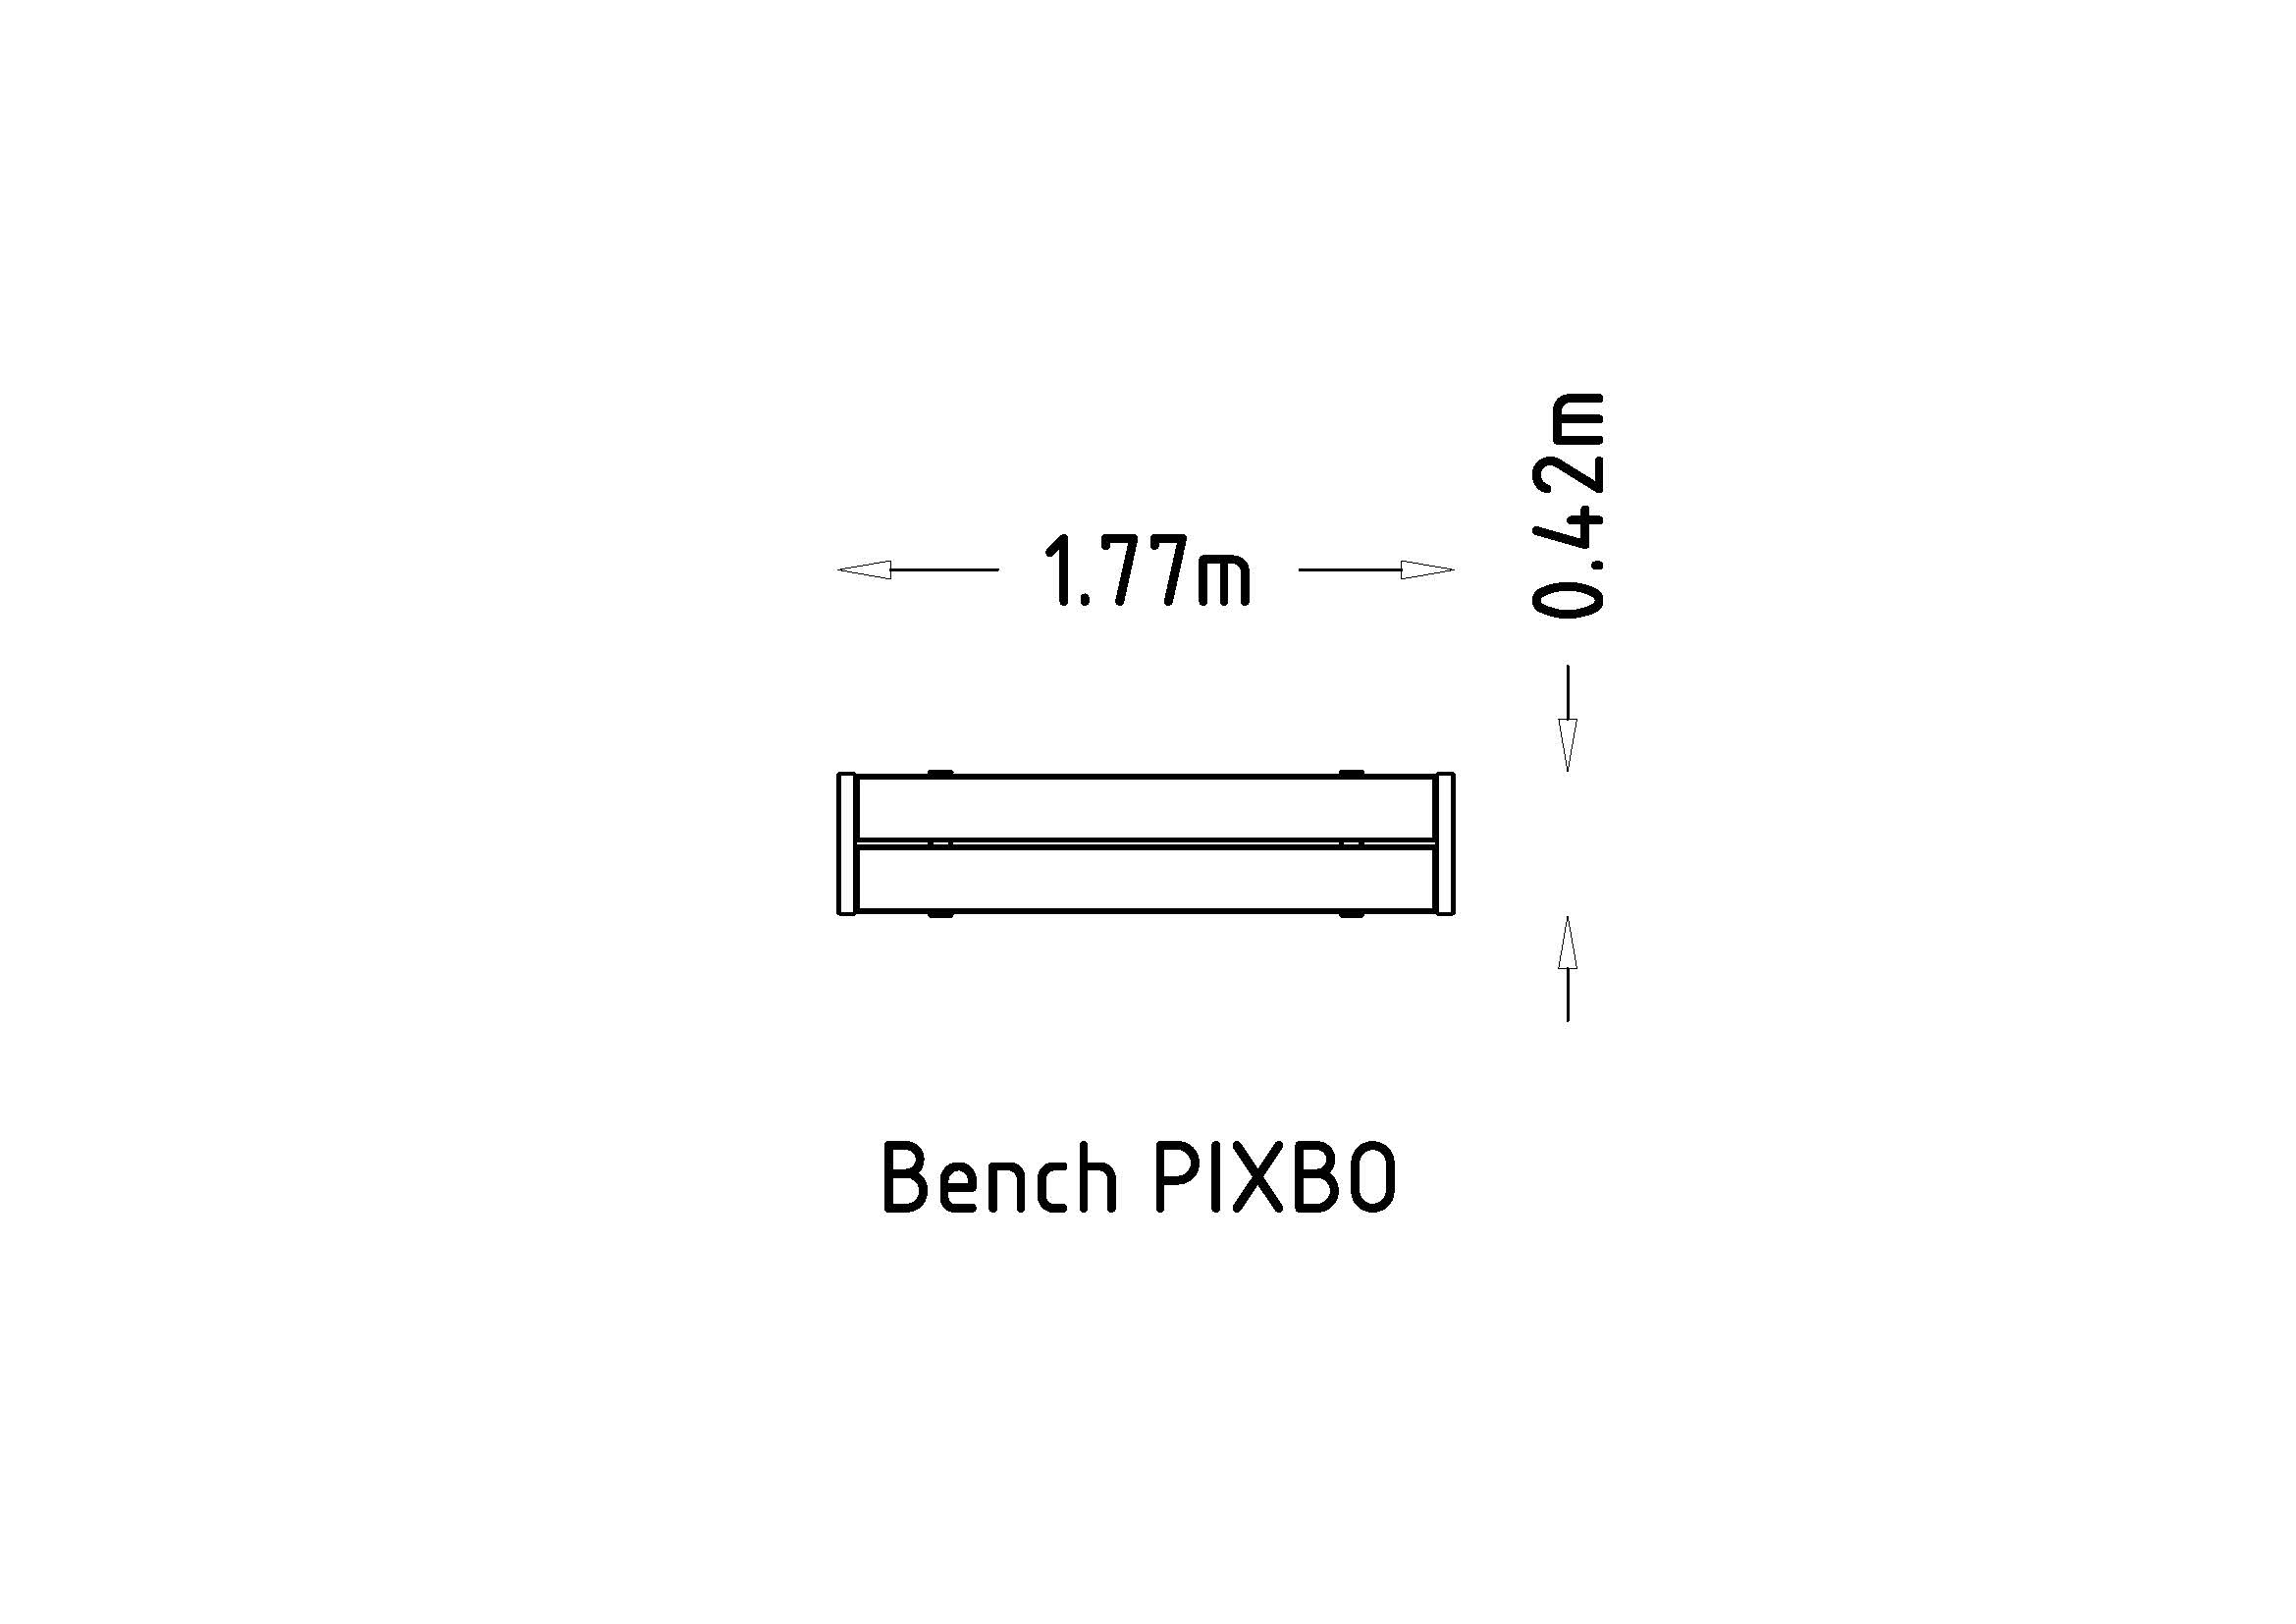 Park Bench Pixbo